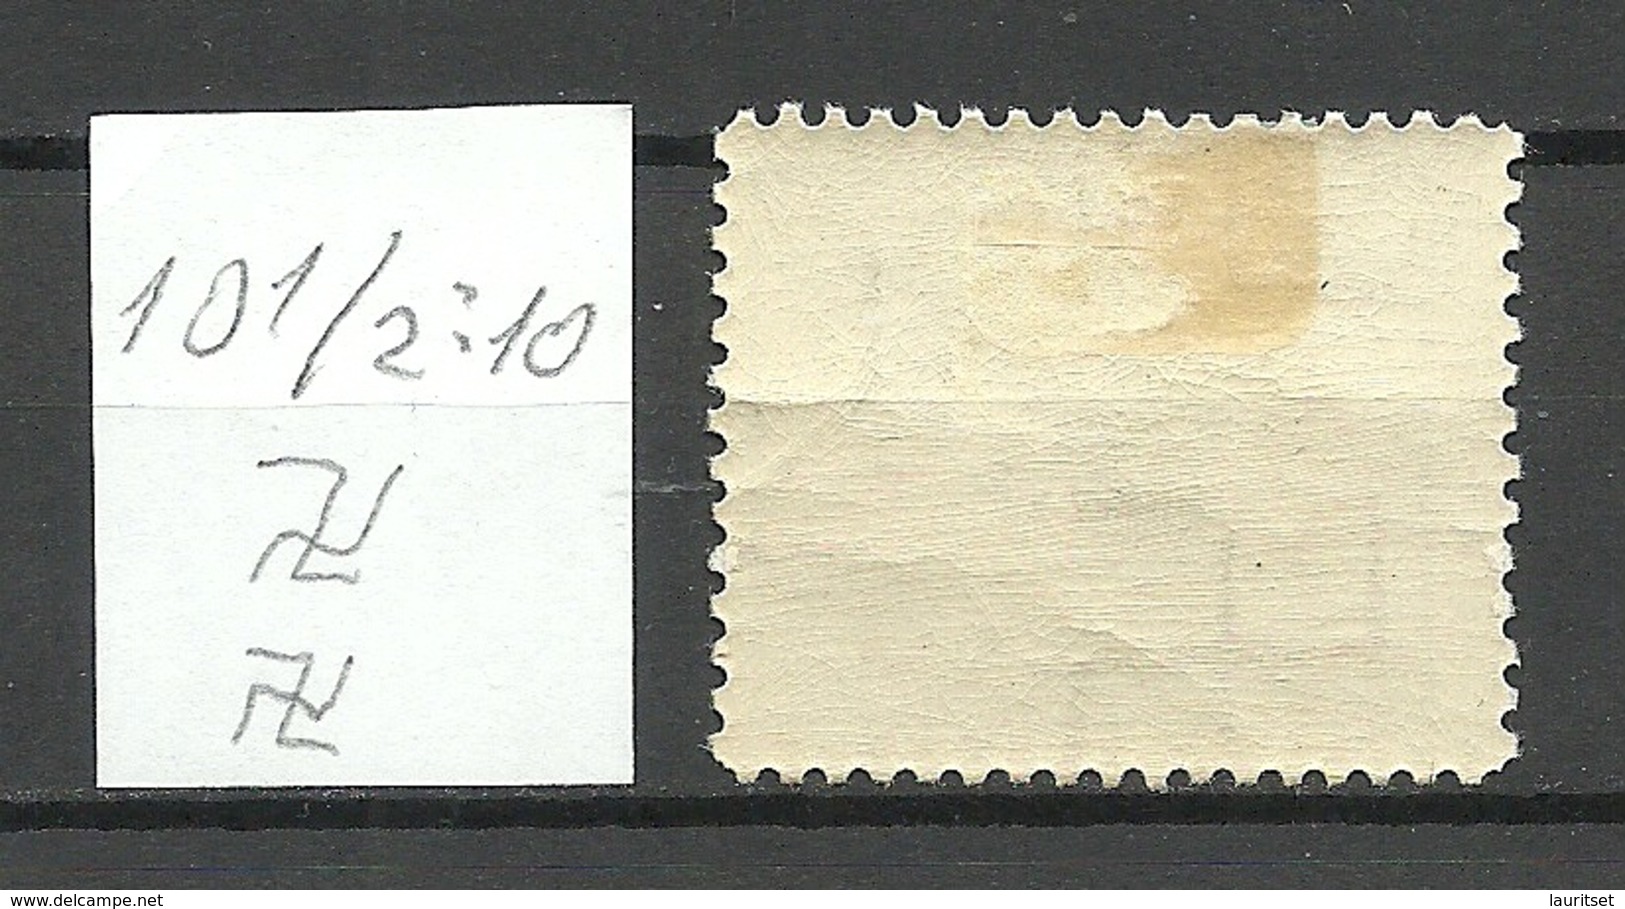 LETTLAND Latvia 1939 Michel 275 Inverted Vertical Watermark Perf 10 1/2:10 * - Lettland